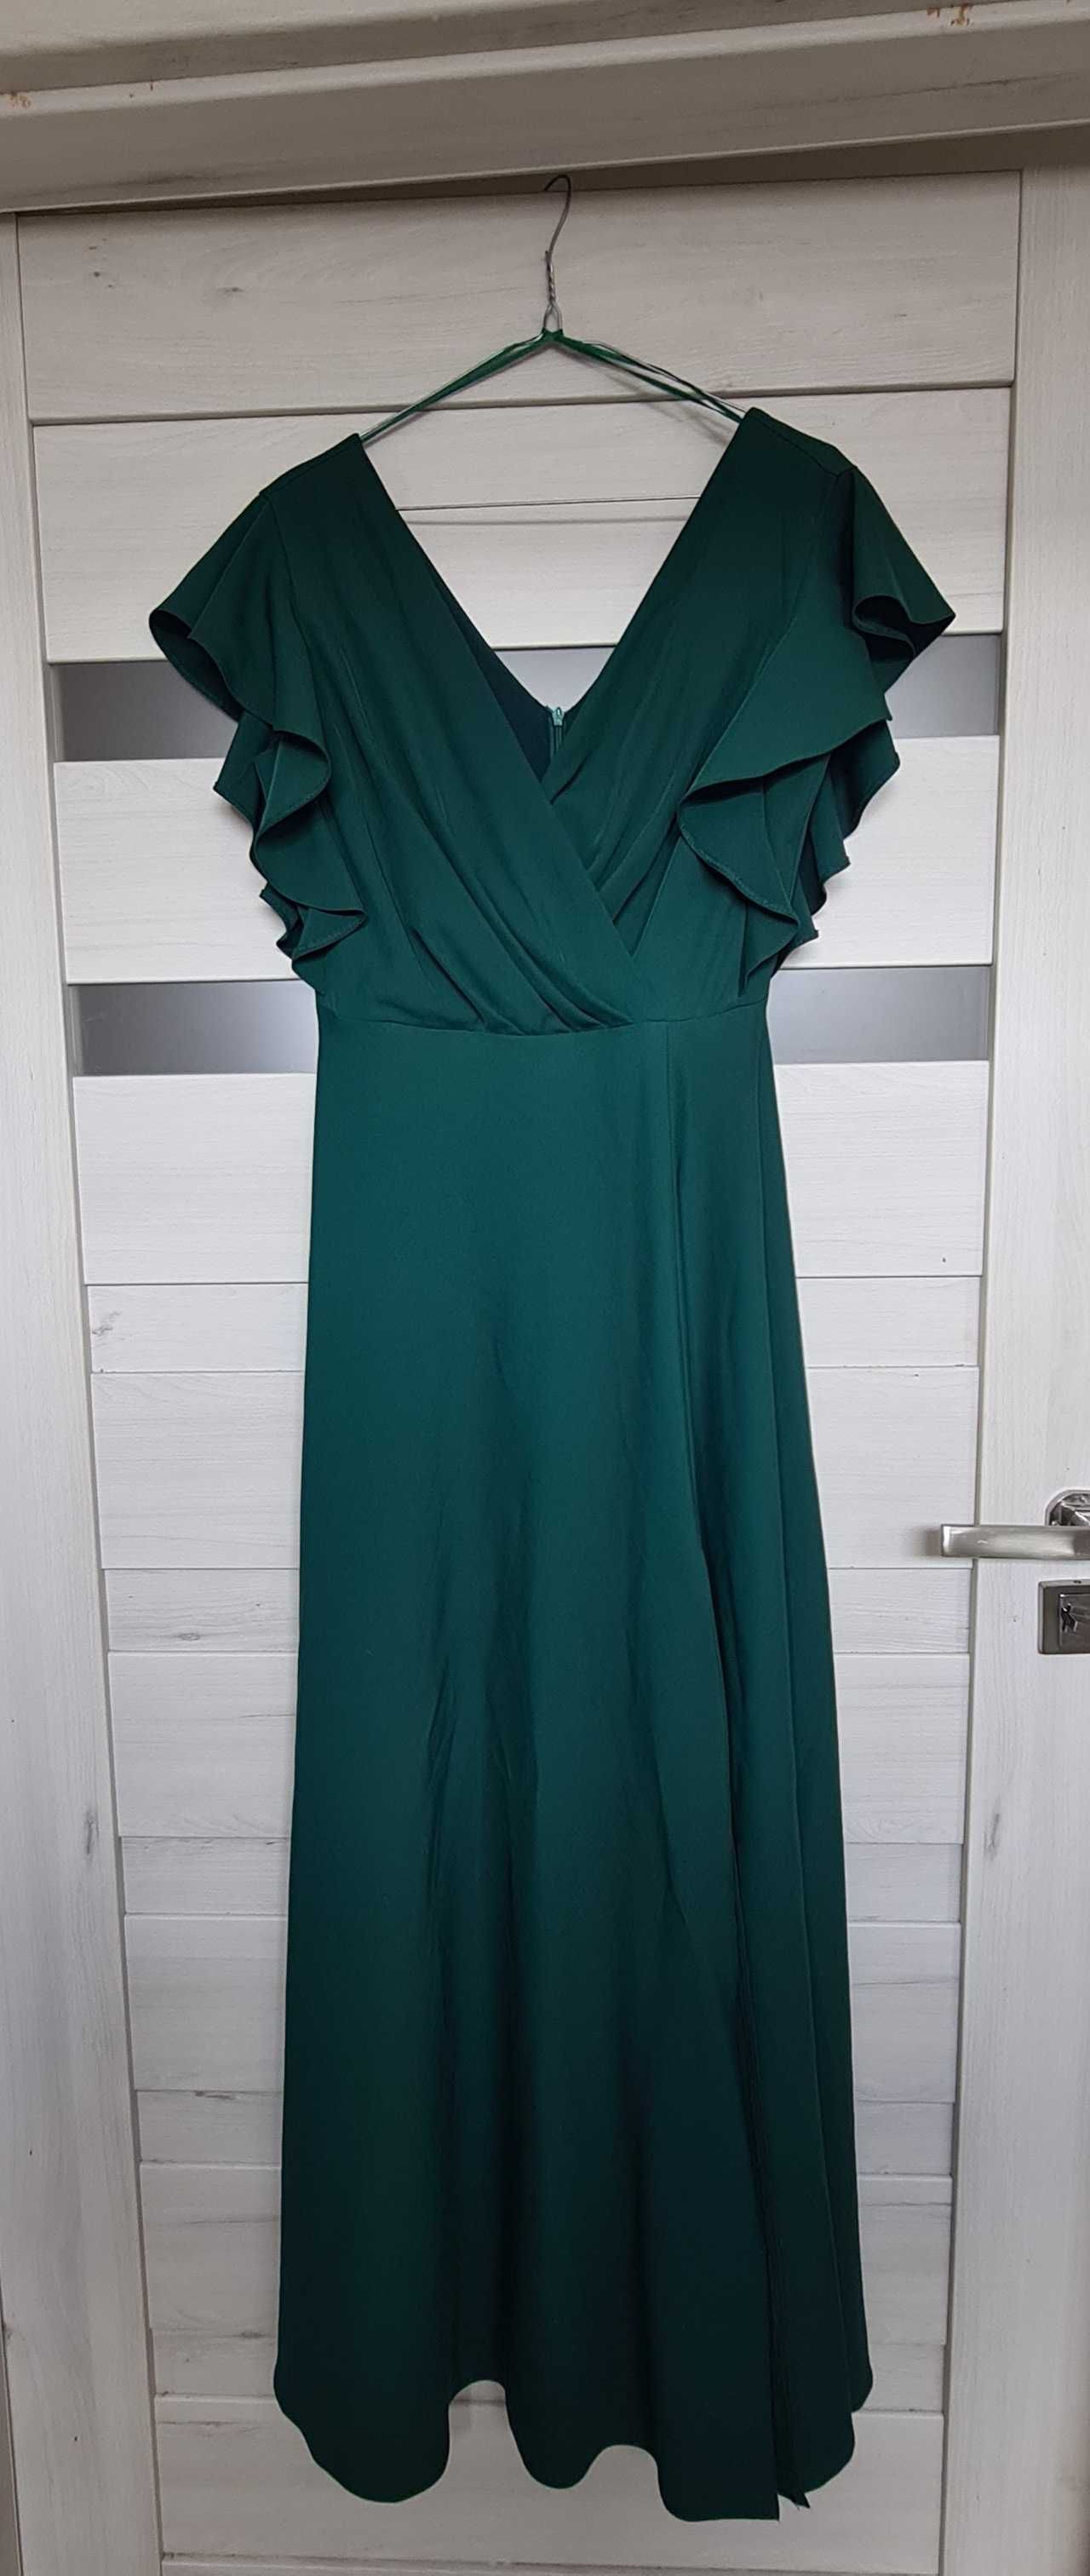 Suknia sukienka długa balowa ciemna butelkowa zieleń na wesele